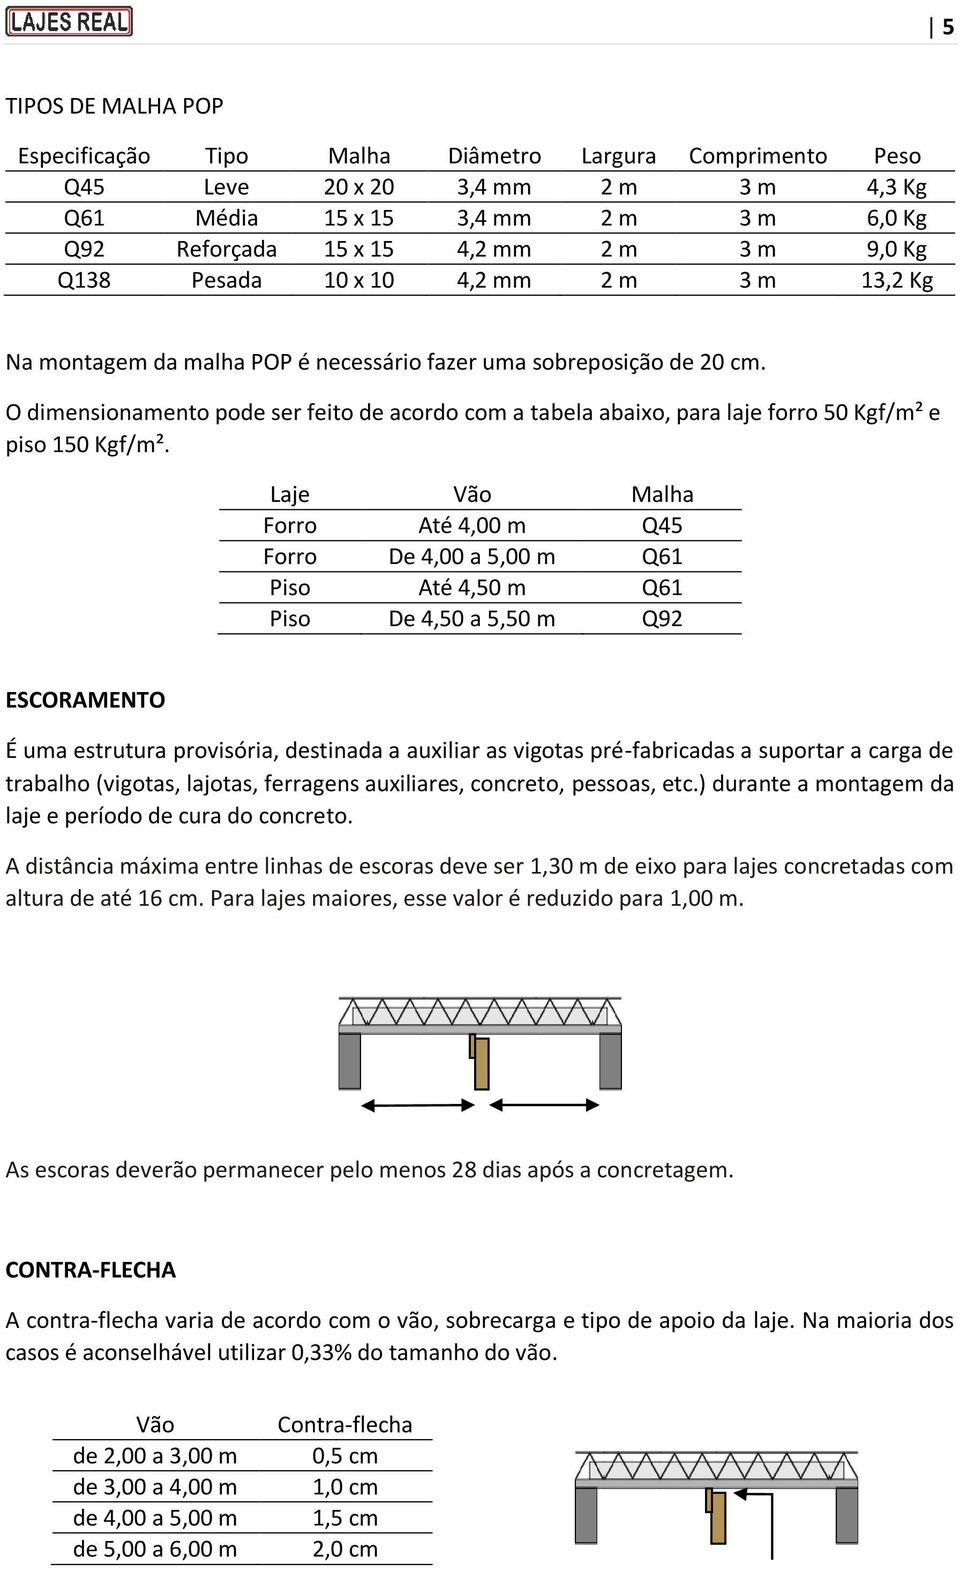 O dimensionamento pode ser feito de acordo com a tabela abaixo, para laje forro 50 Kgf/m² e piso 150 Kgf/m².